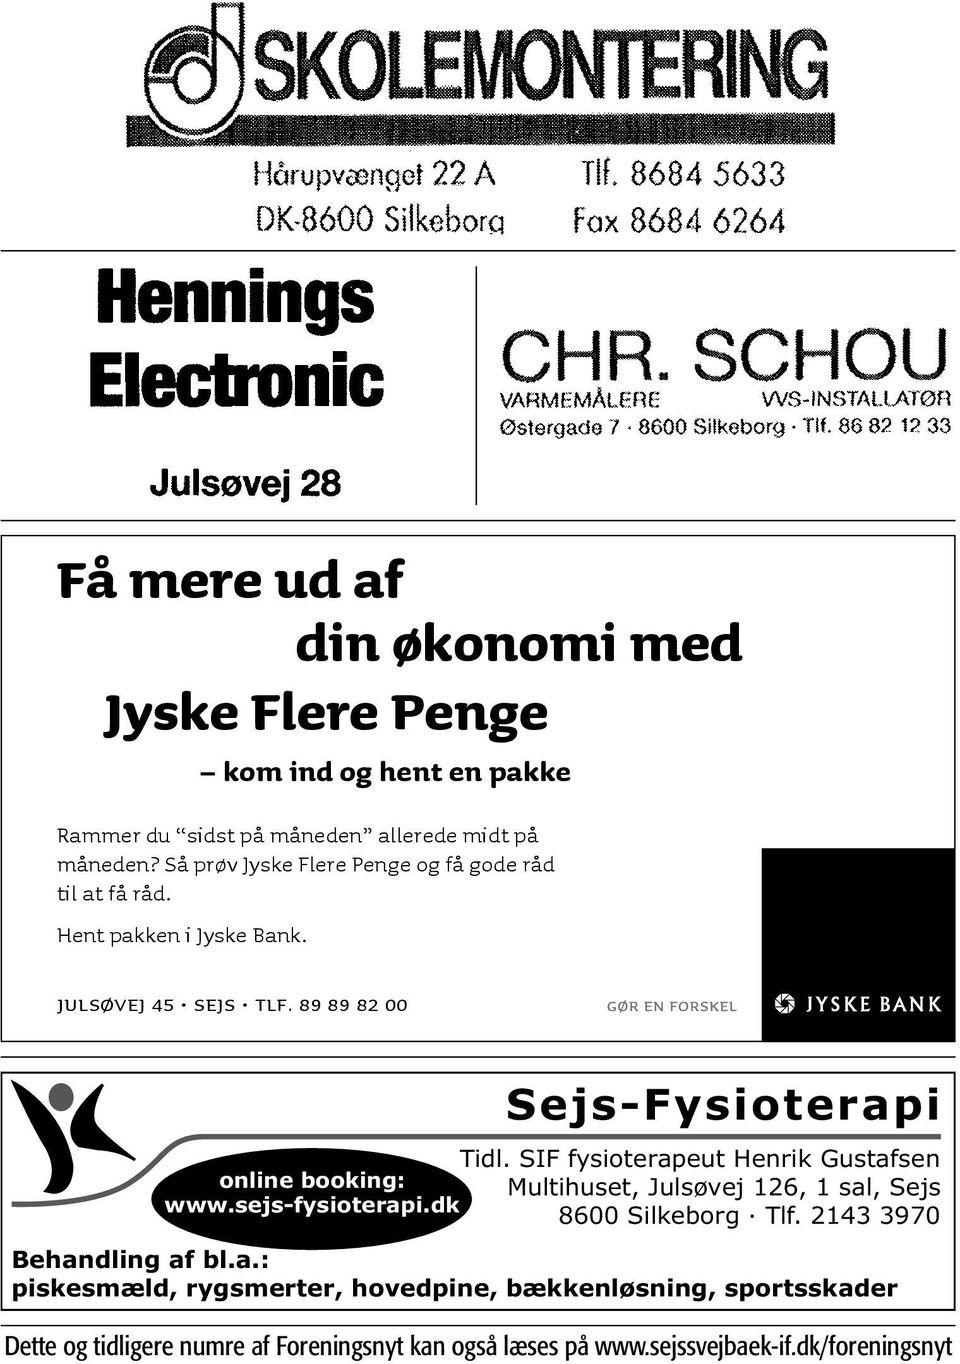 SIF fysioterapeut Henrik Gustafsen online booking: Multihuset, Julsøvej 126, 1 sal, Sejs www.sejs-fysioterapi.dk 8600 Silkeborg Tlf.